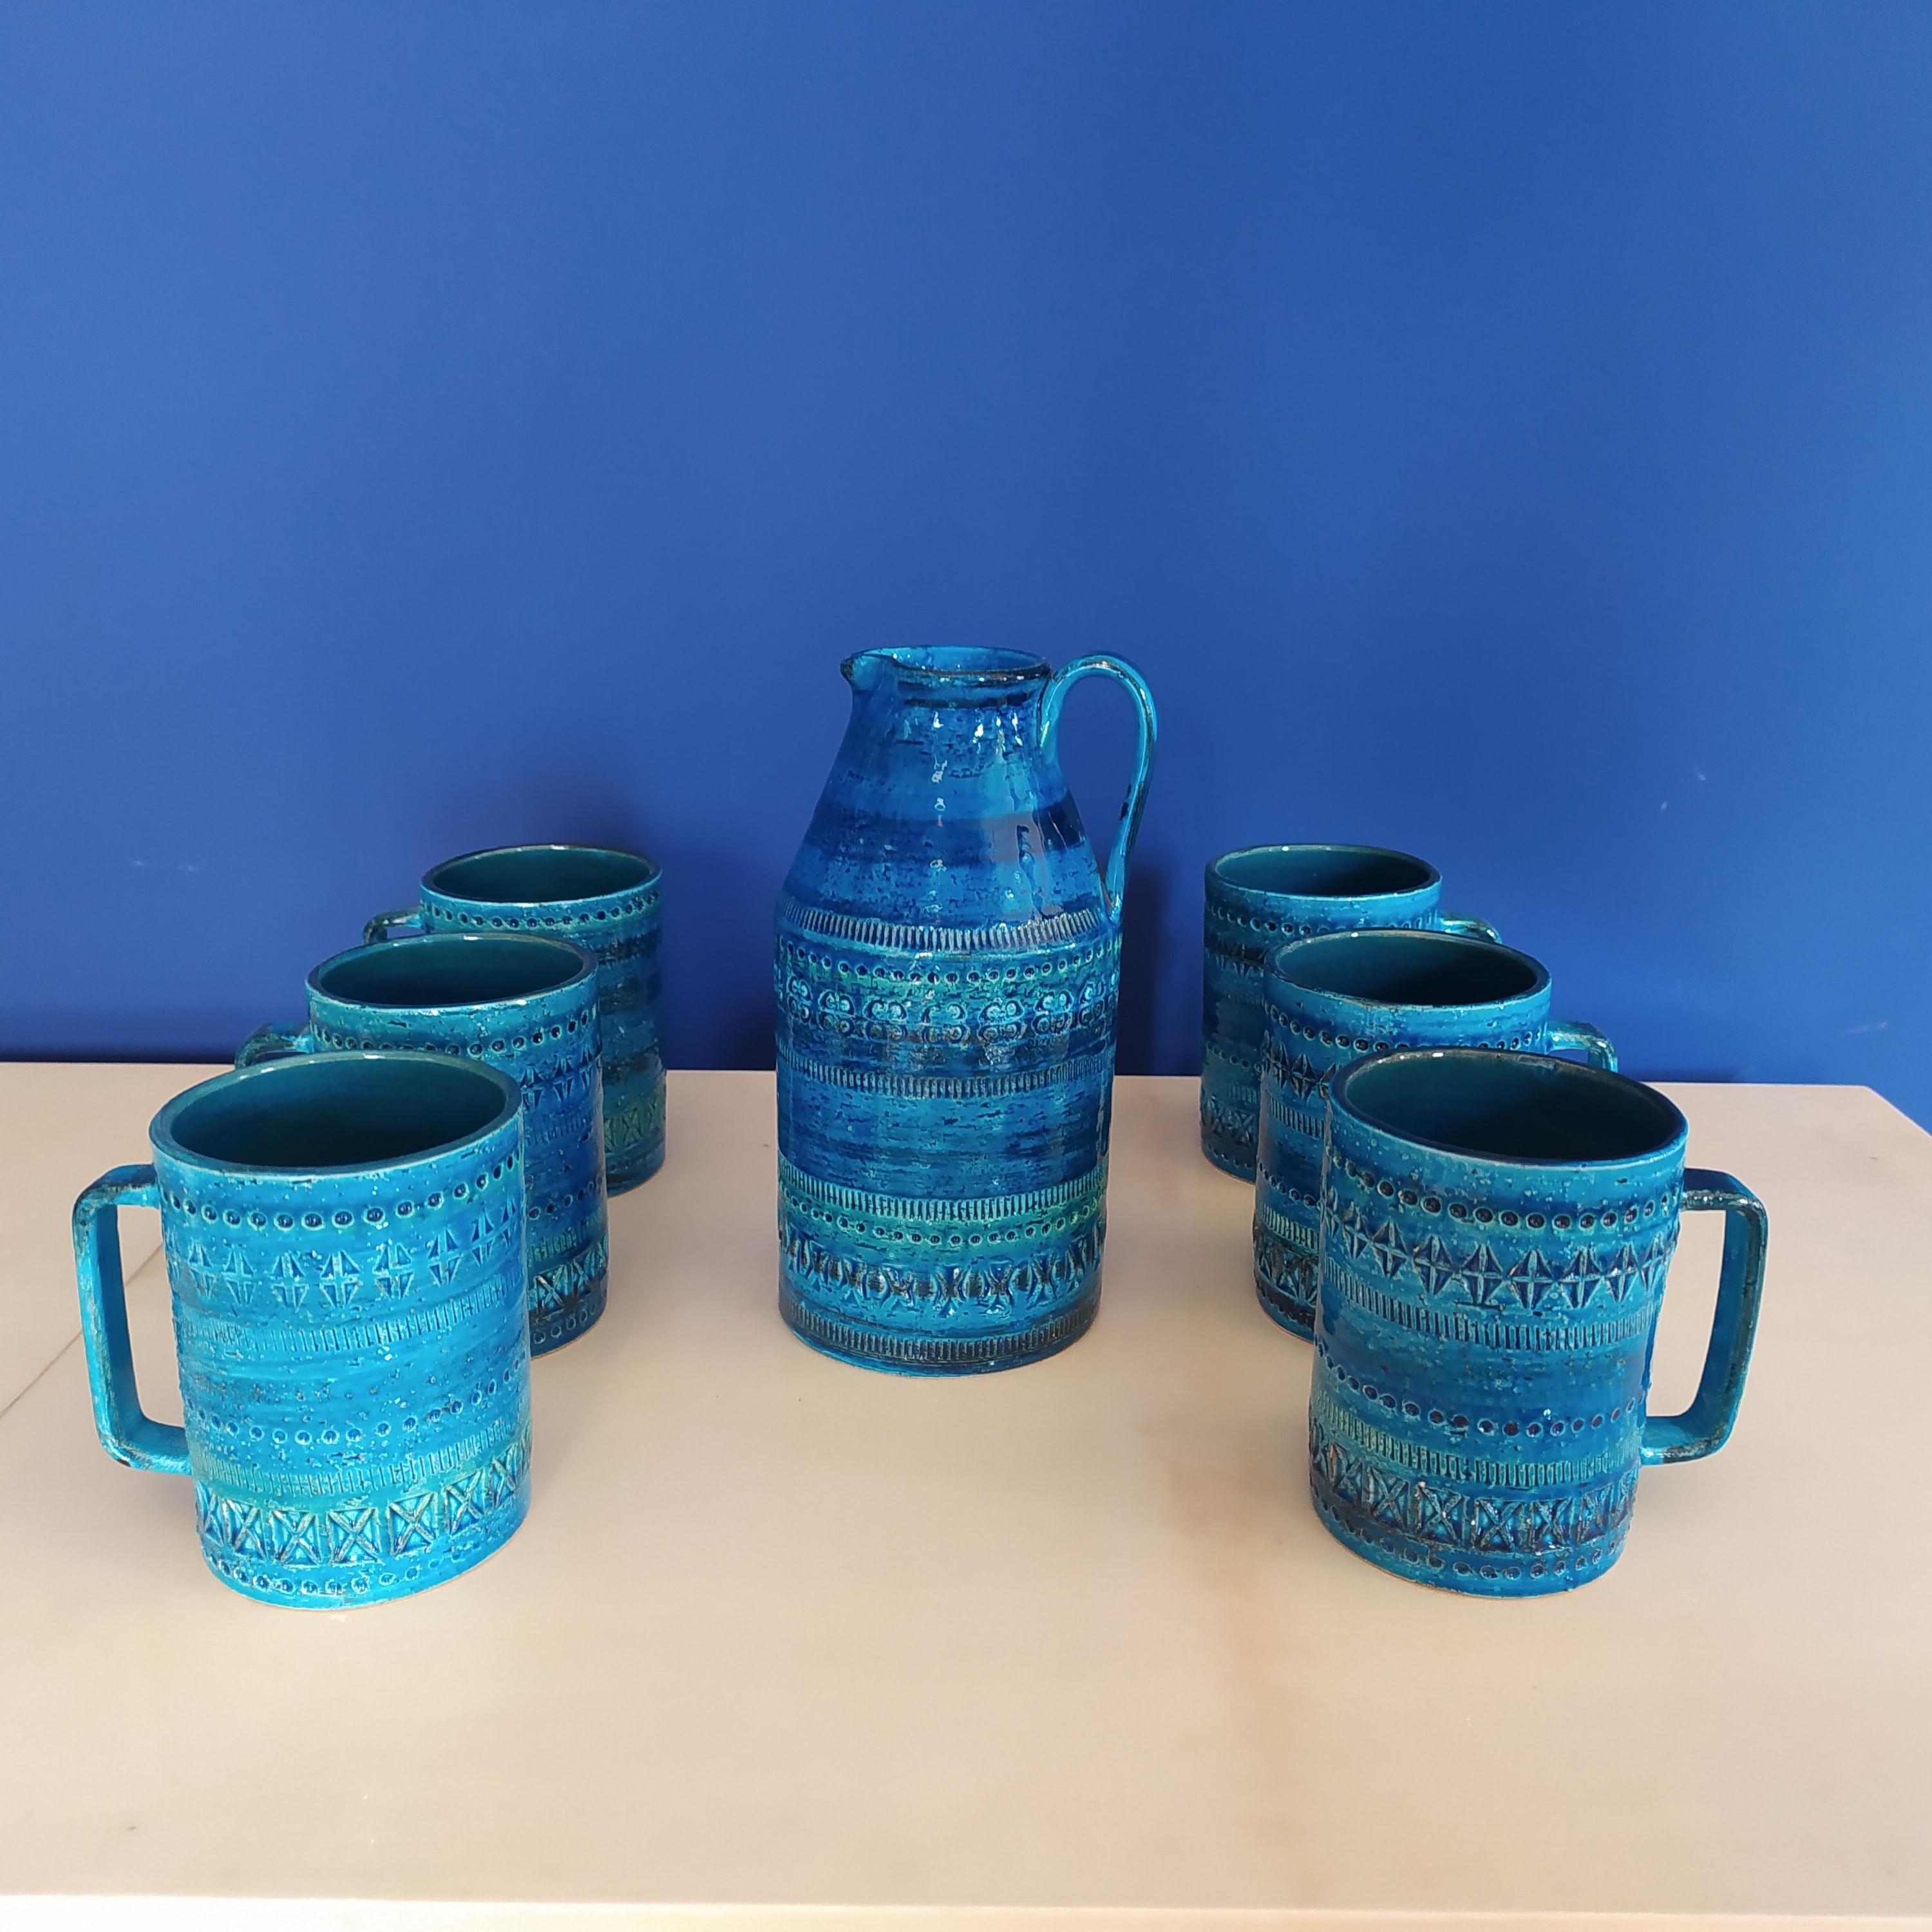 1960er Jahre Set aus einer Kanne mit sechs Tassen von Aldo Londi für Bitossi (Blue Collection'S) aus Keramik. Hergestellt in Italien
Die Artikel sind in ausgezeichnetem Zustand